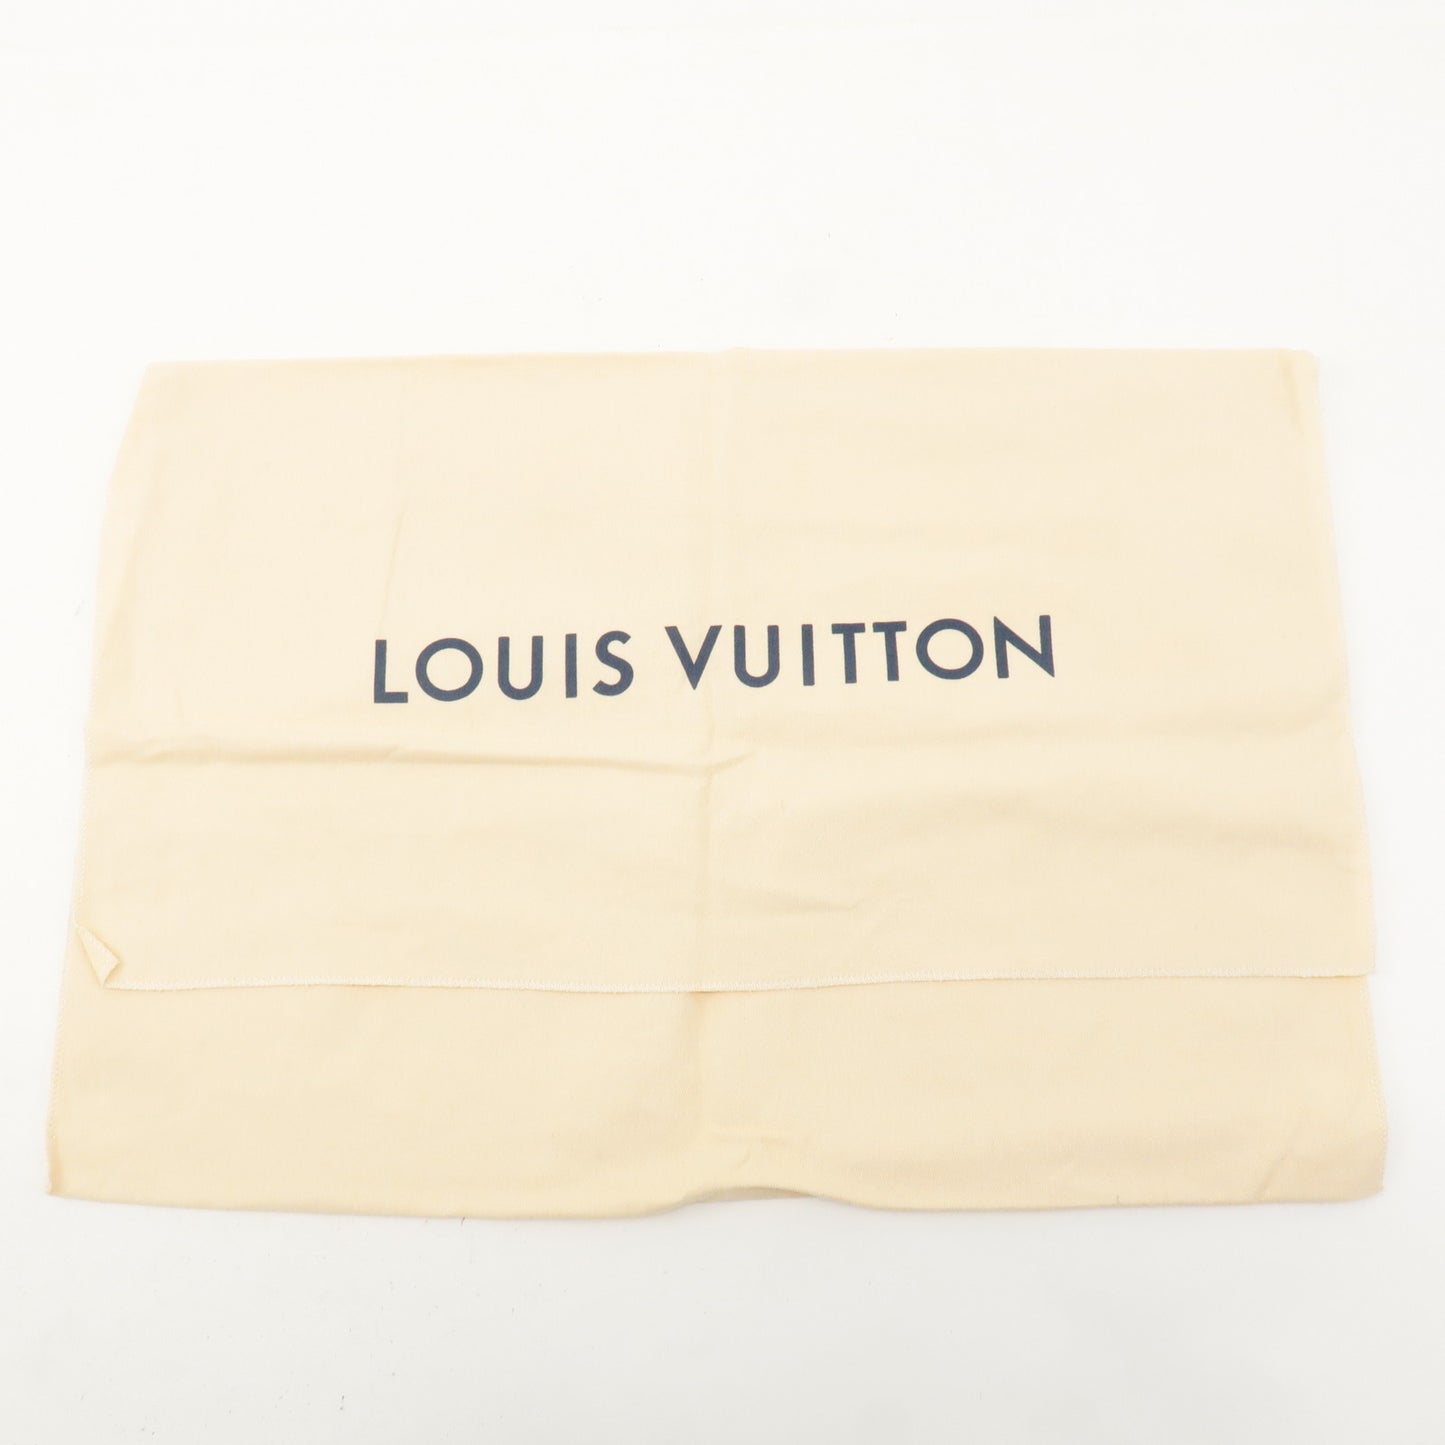 Louis Vuitton Set of 10 Dust Bag Storage Bag Flap New Style Beige